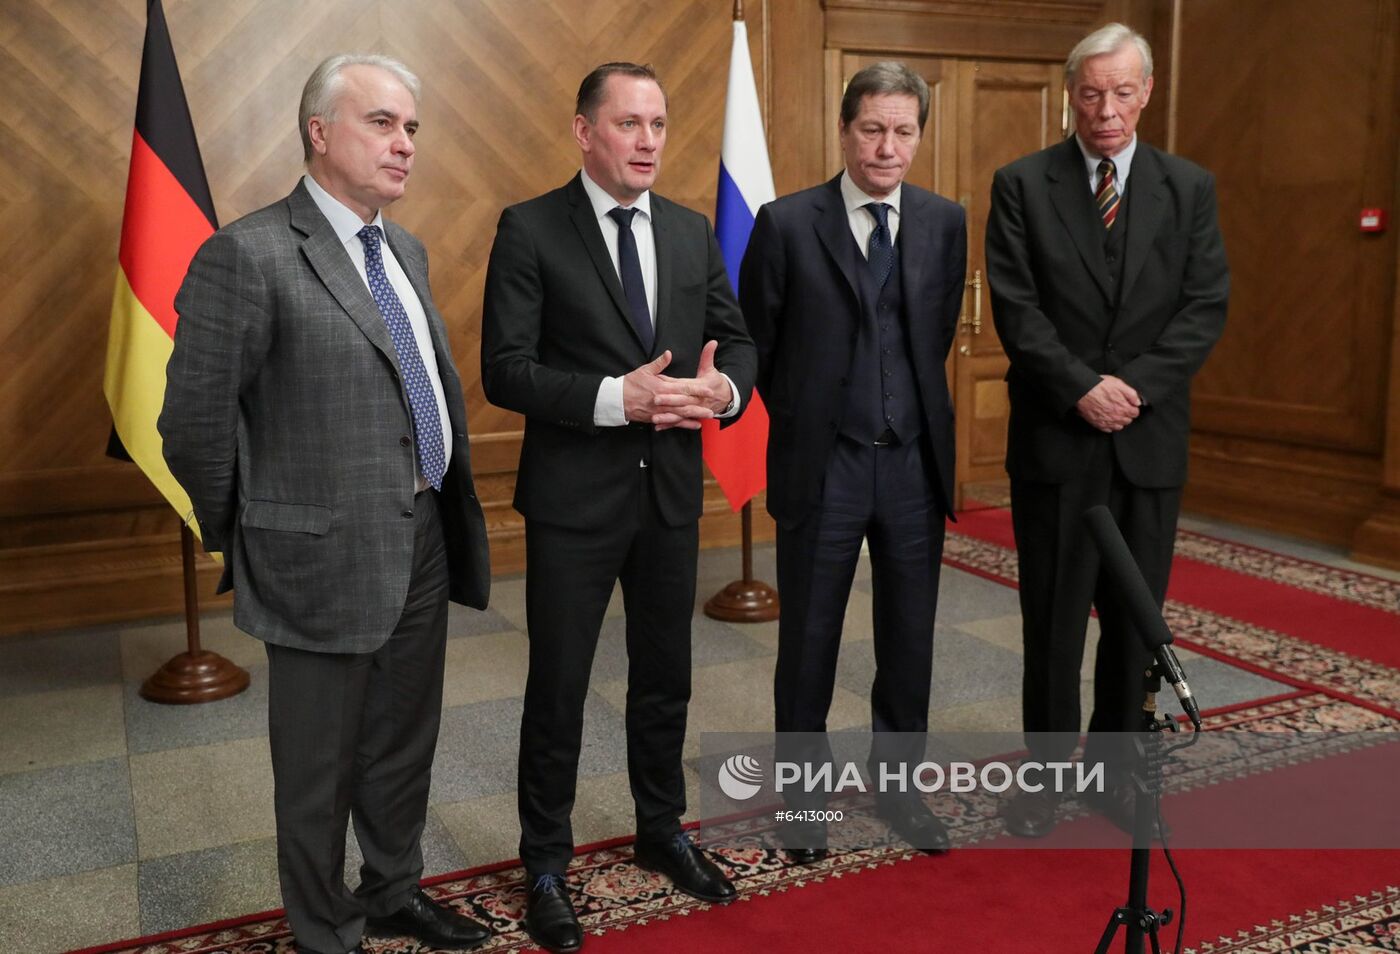 Первый заместитель председателя Госдумы А. Жуков встретился с делегацией партии "Альтернатива для Германии"